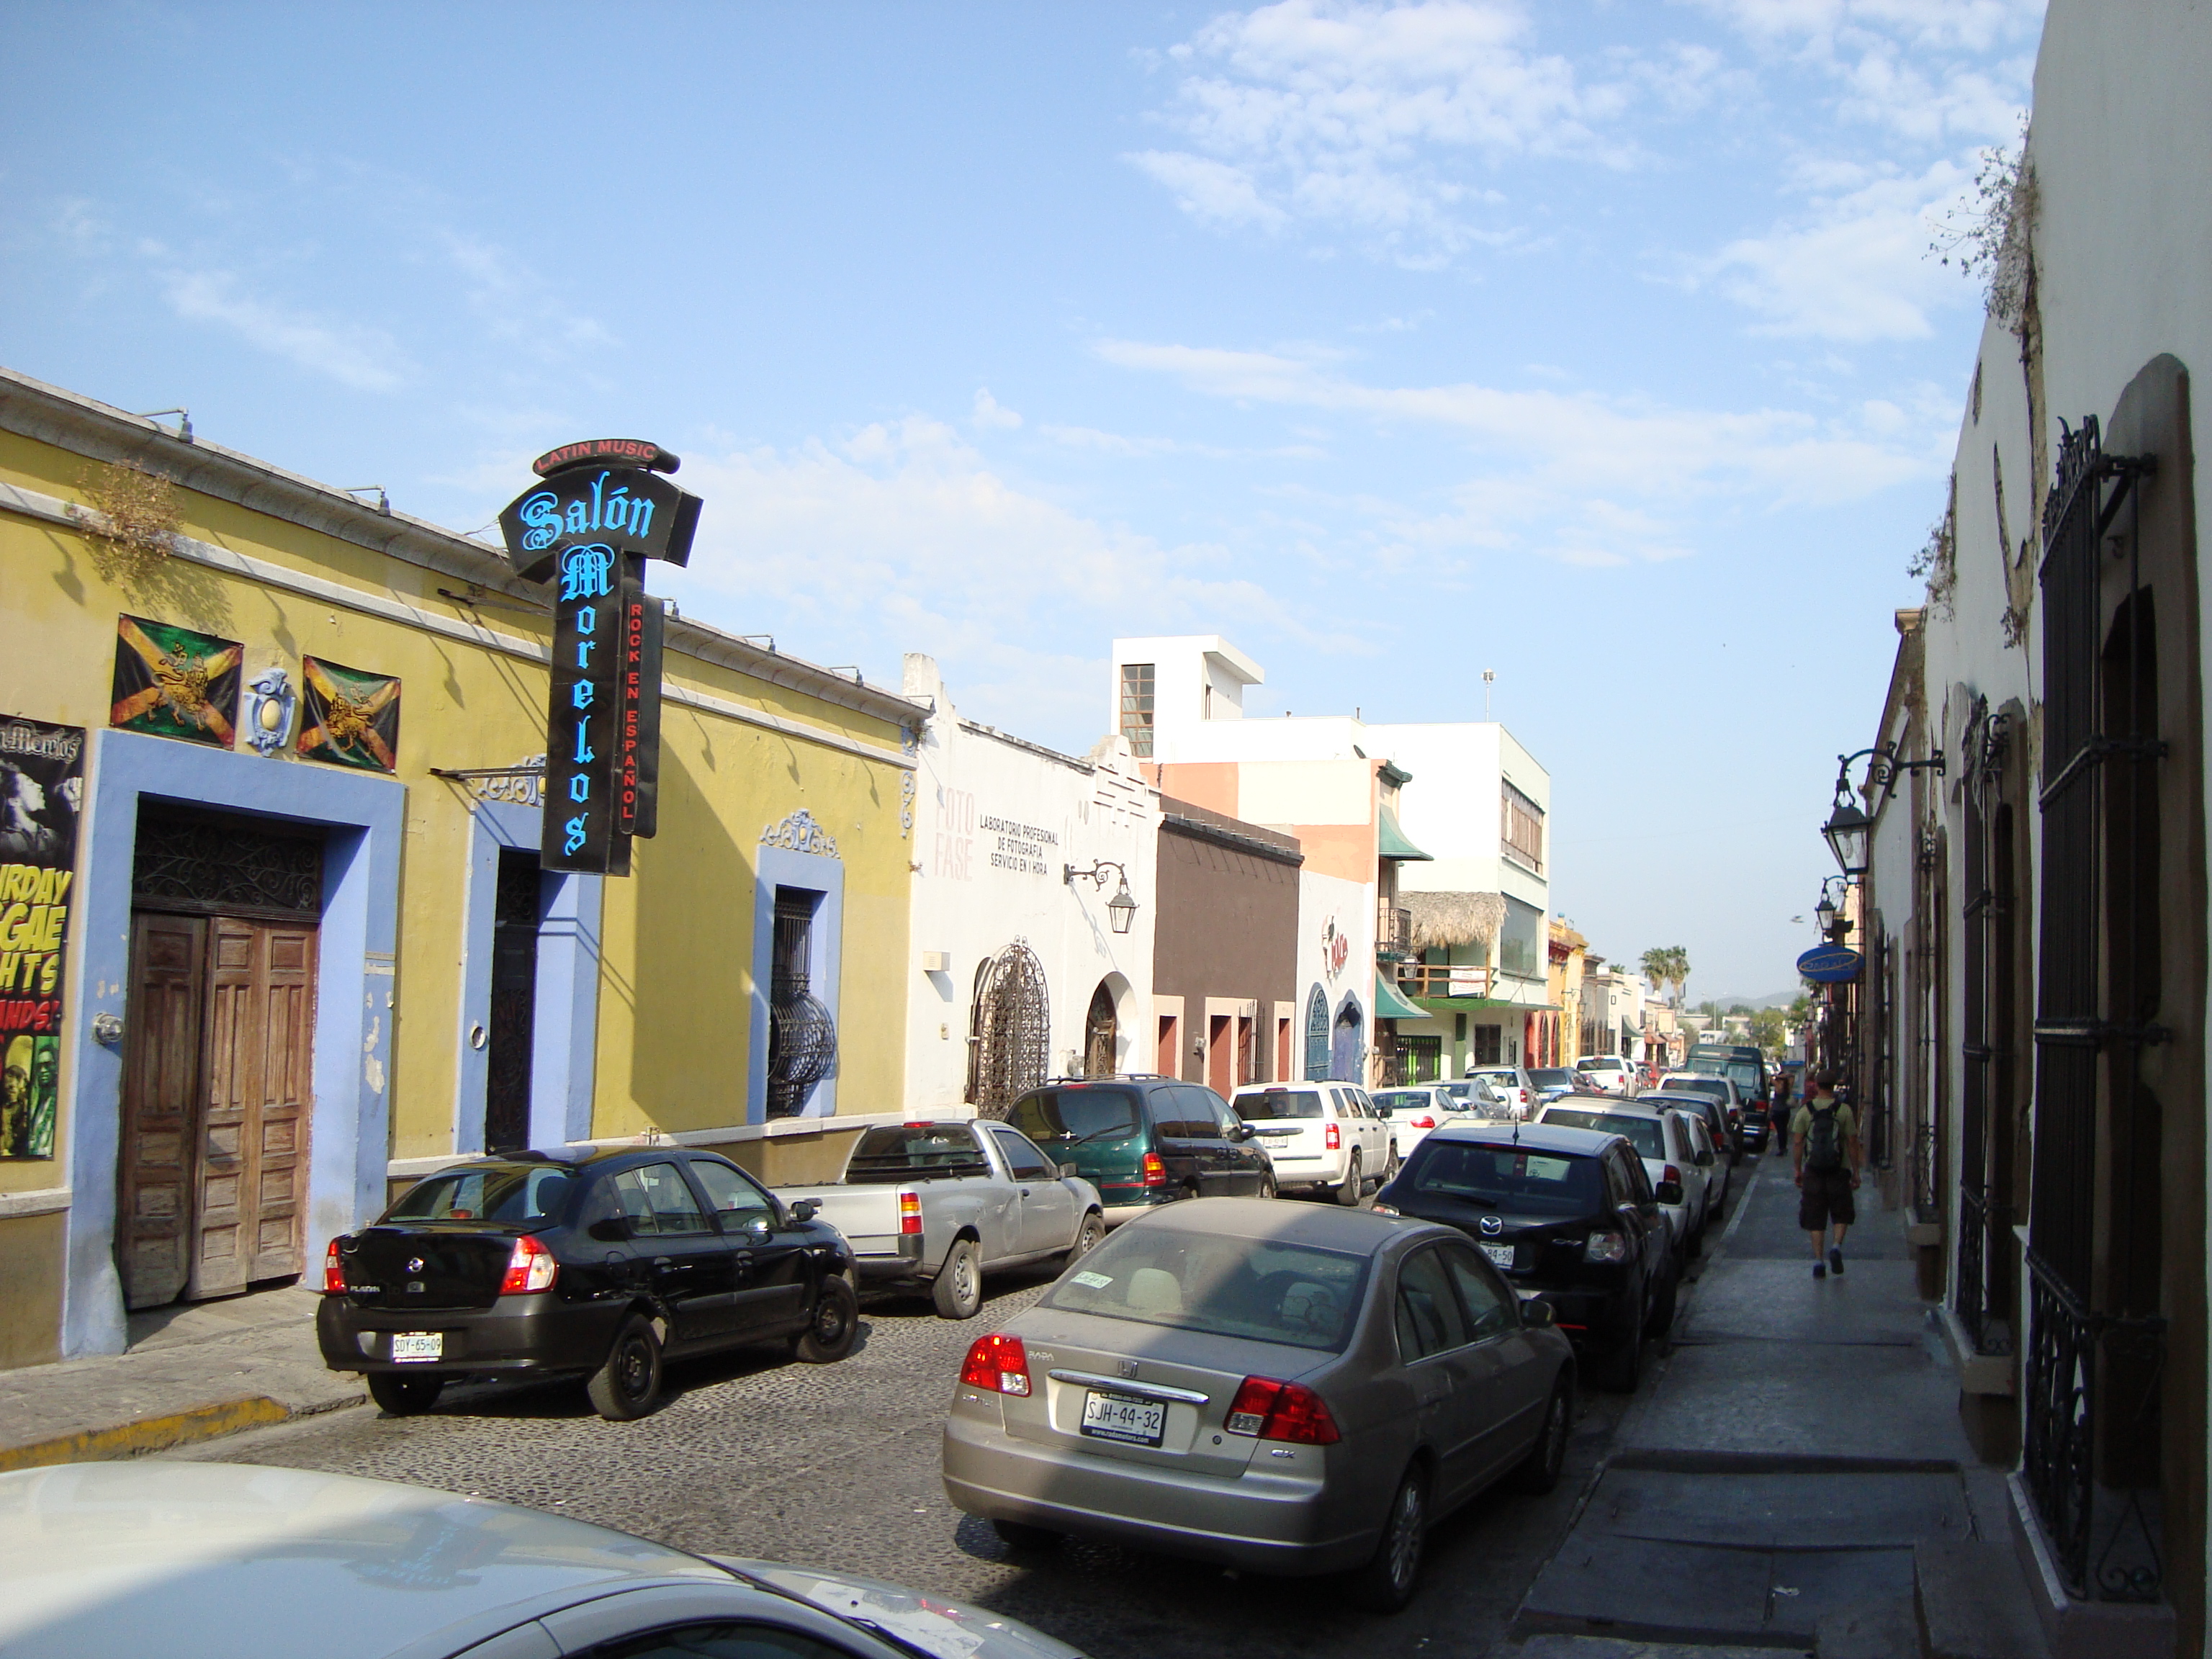 Archivo:Monterrey Barrio Antiguo.JPG - Wikipedia, la enciclopedia libre